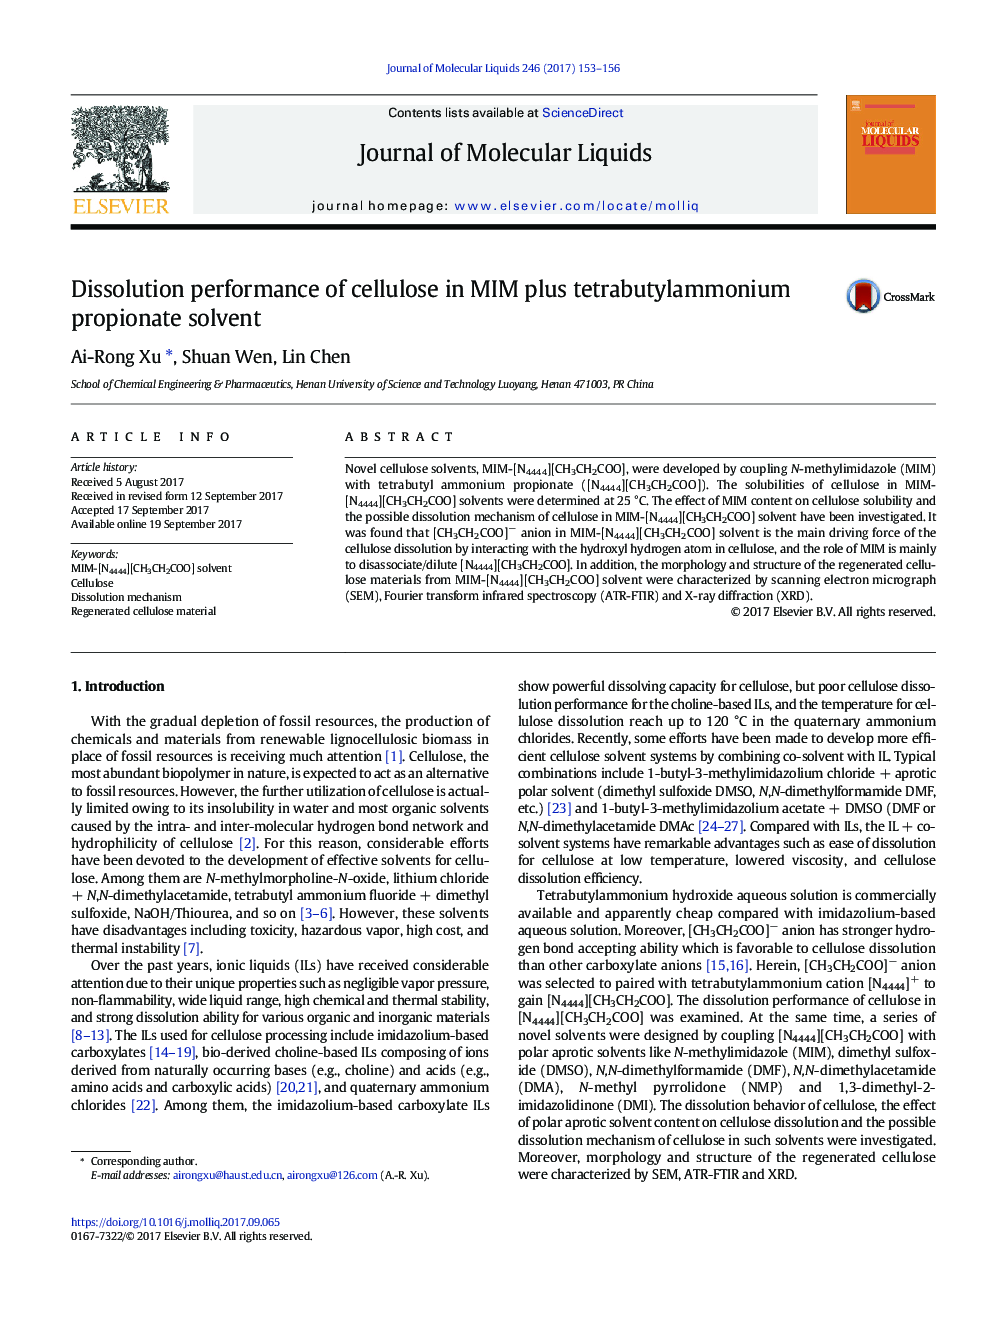 Dissolution performance of cellulose in MIM plus tetrabutylammonium propionate solvent